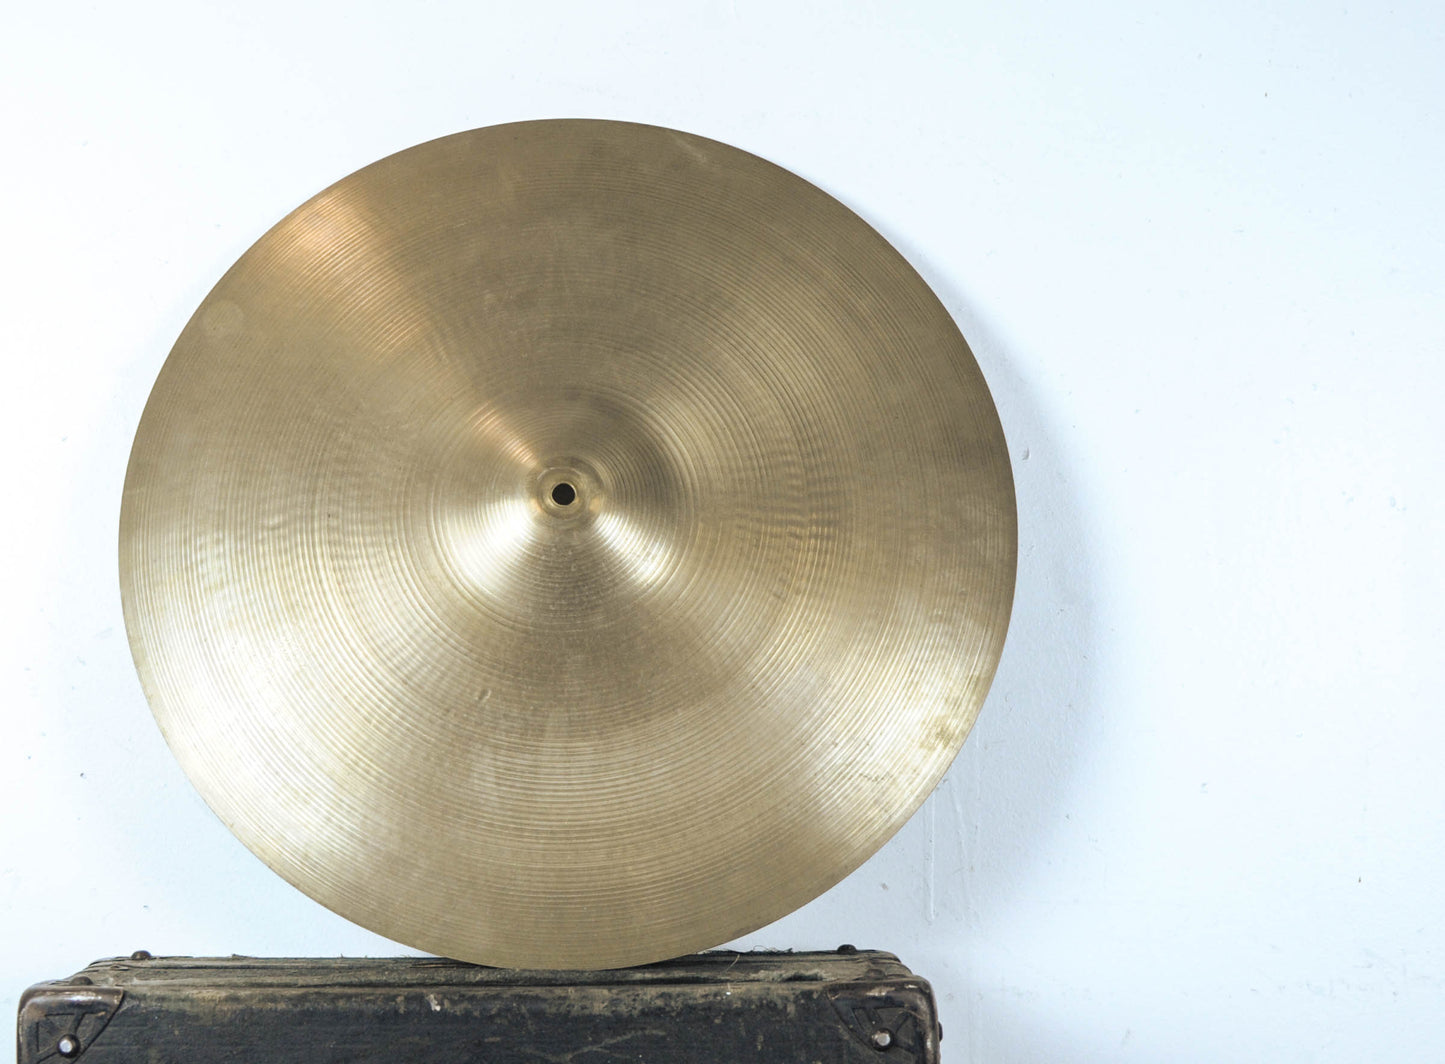 1960s Zildjian A 20" Ride Cymbal 2352g